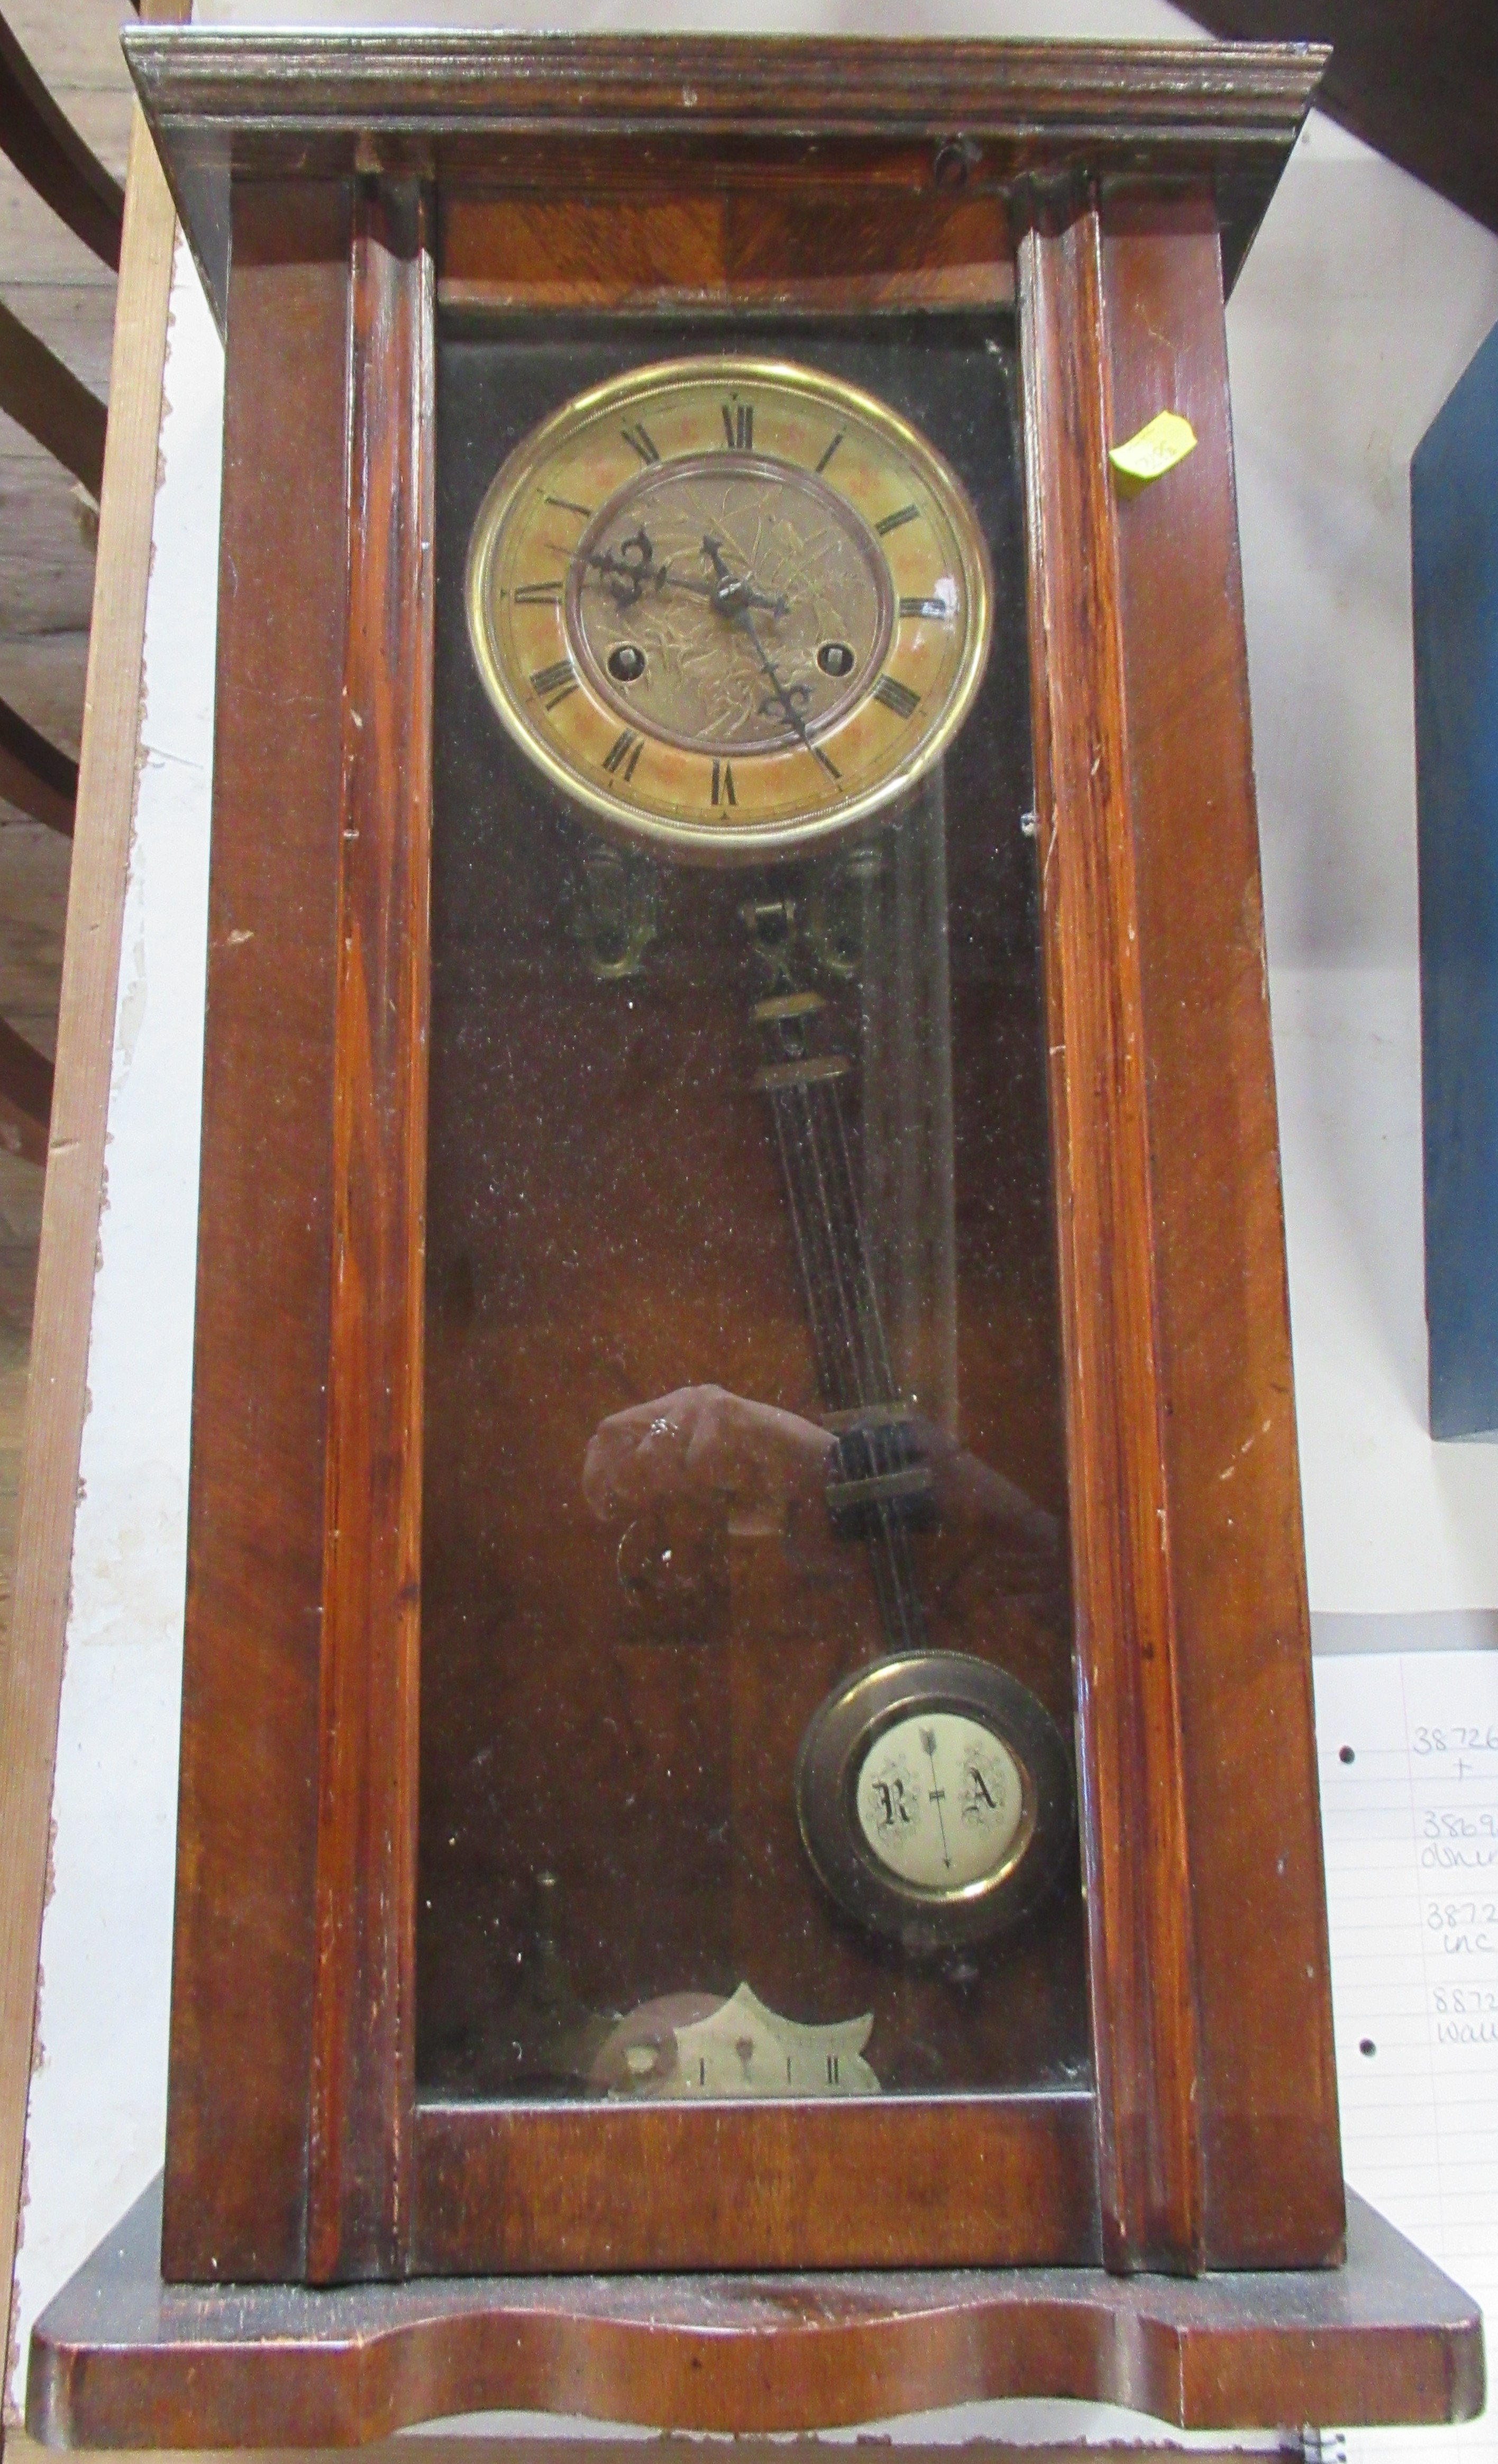 A mahogany cased Vienna style wall clock